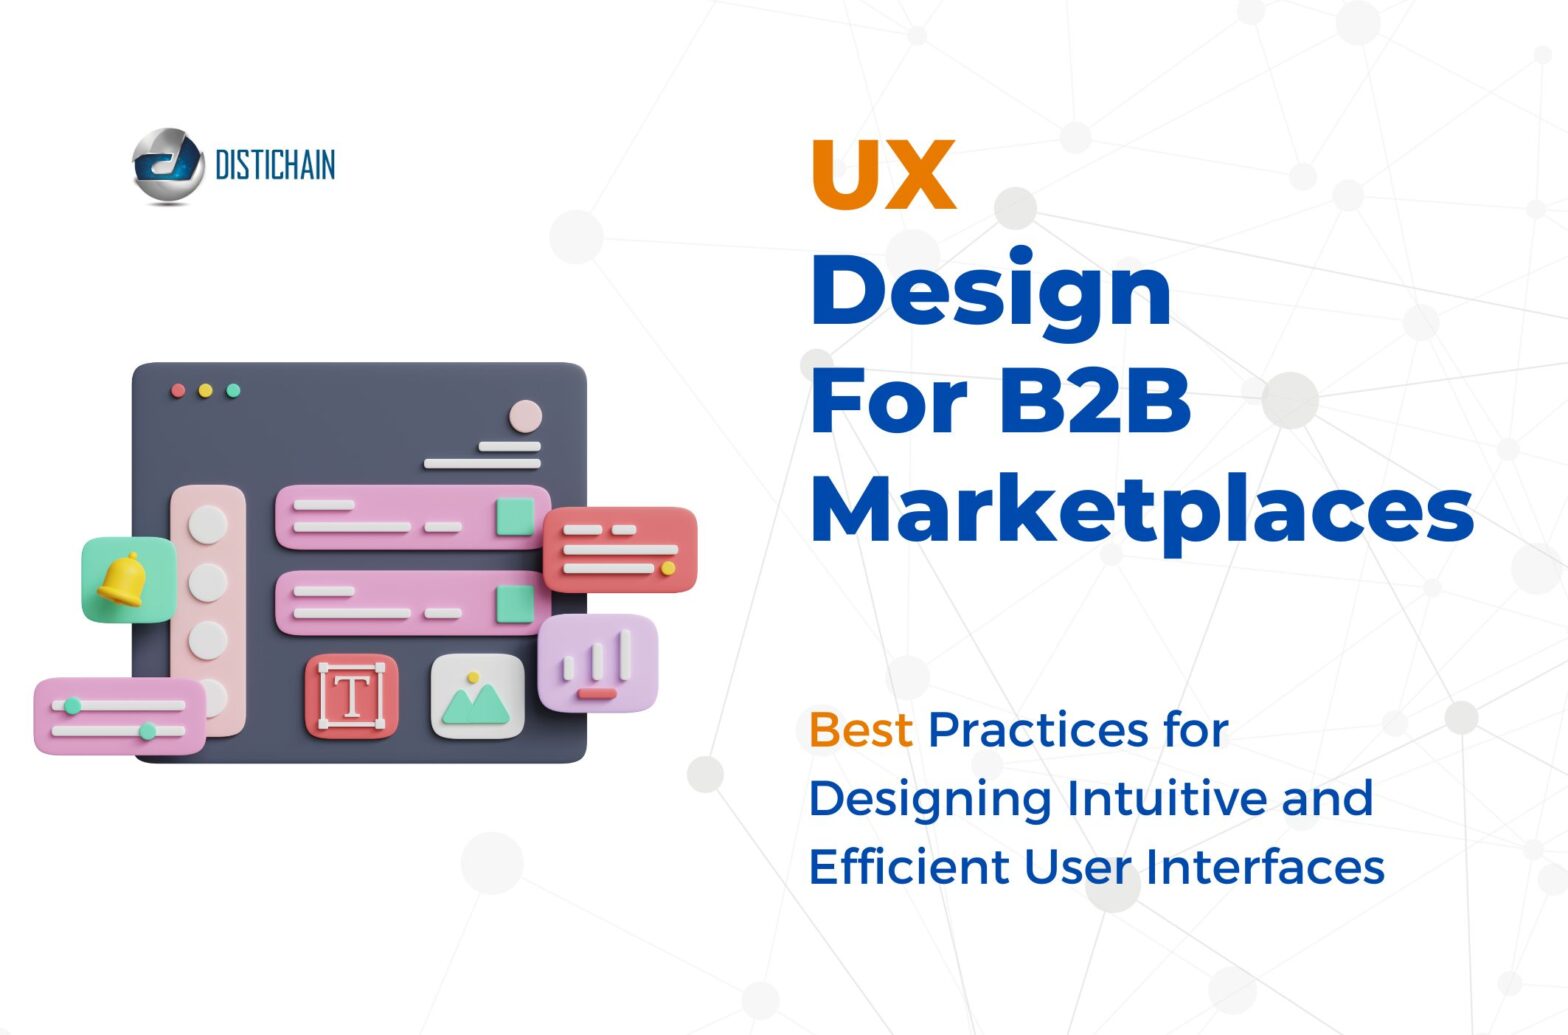 Distichain UX design for b2b marketplaces